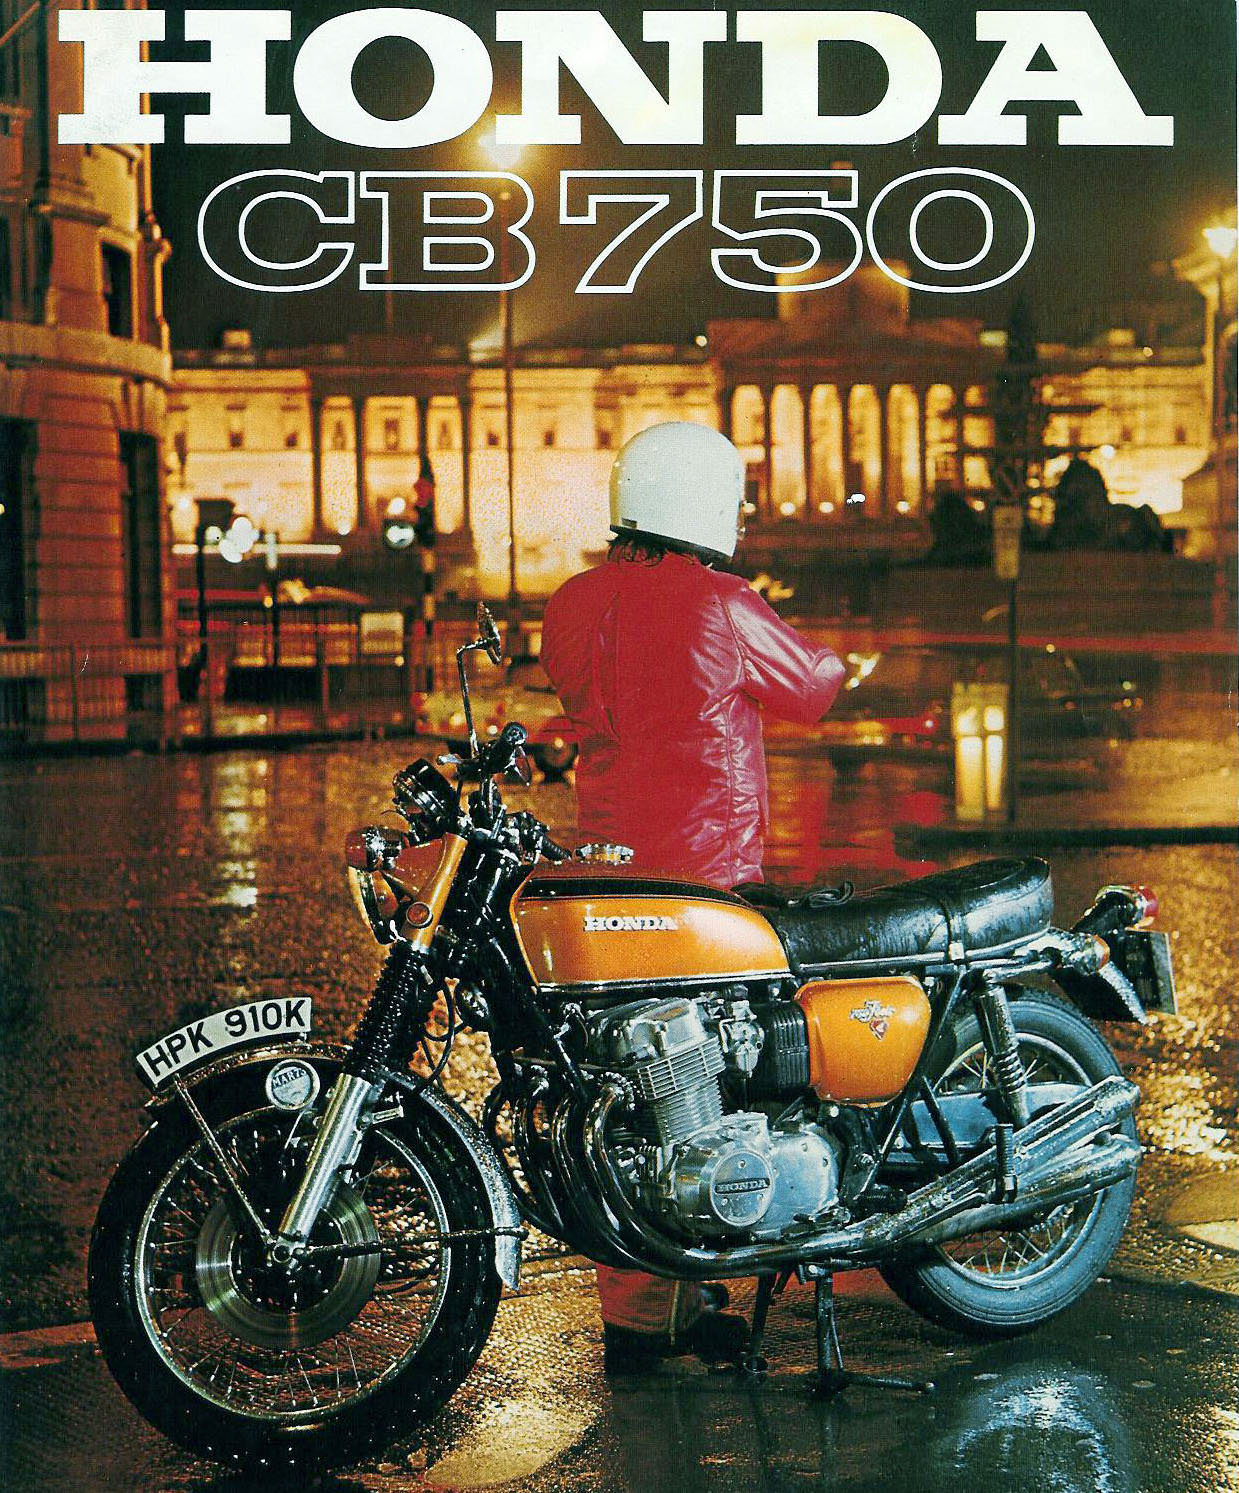 Catálogo da Moto Honda CB 750